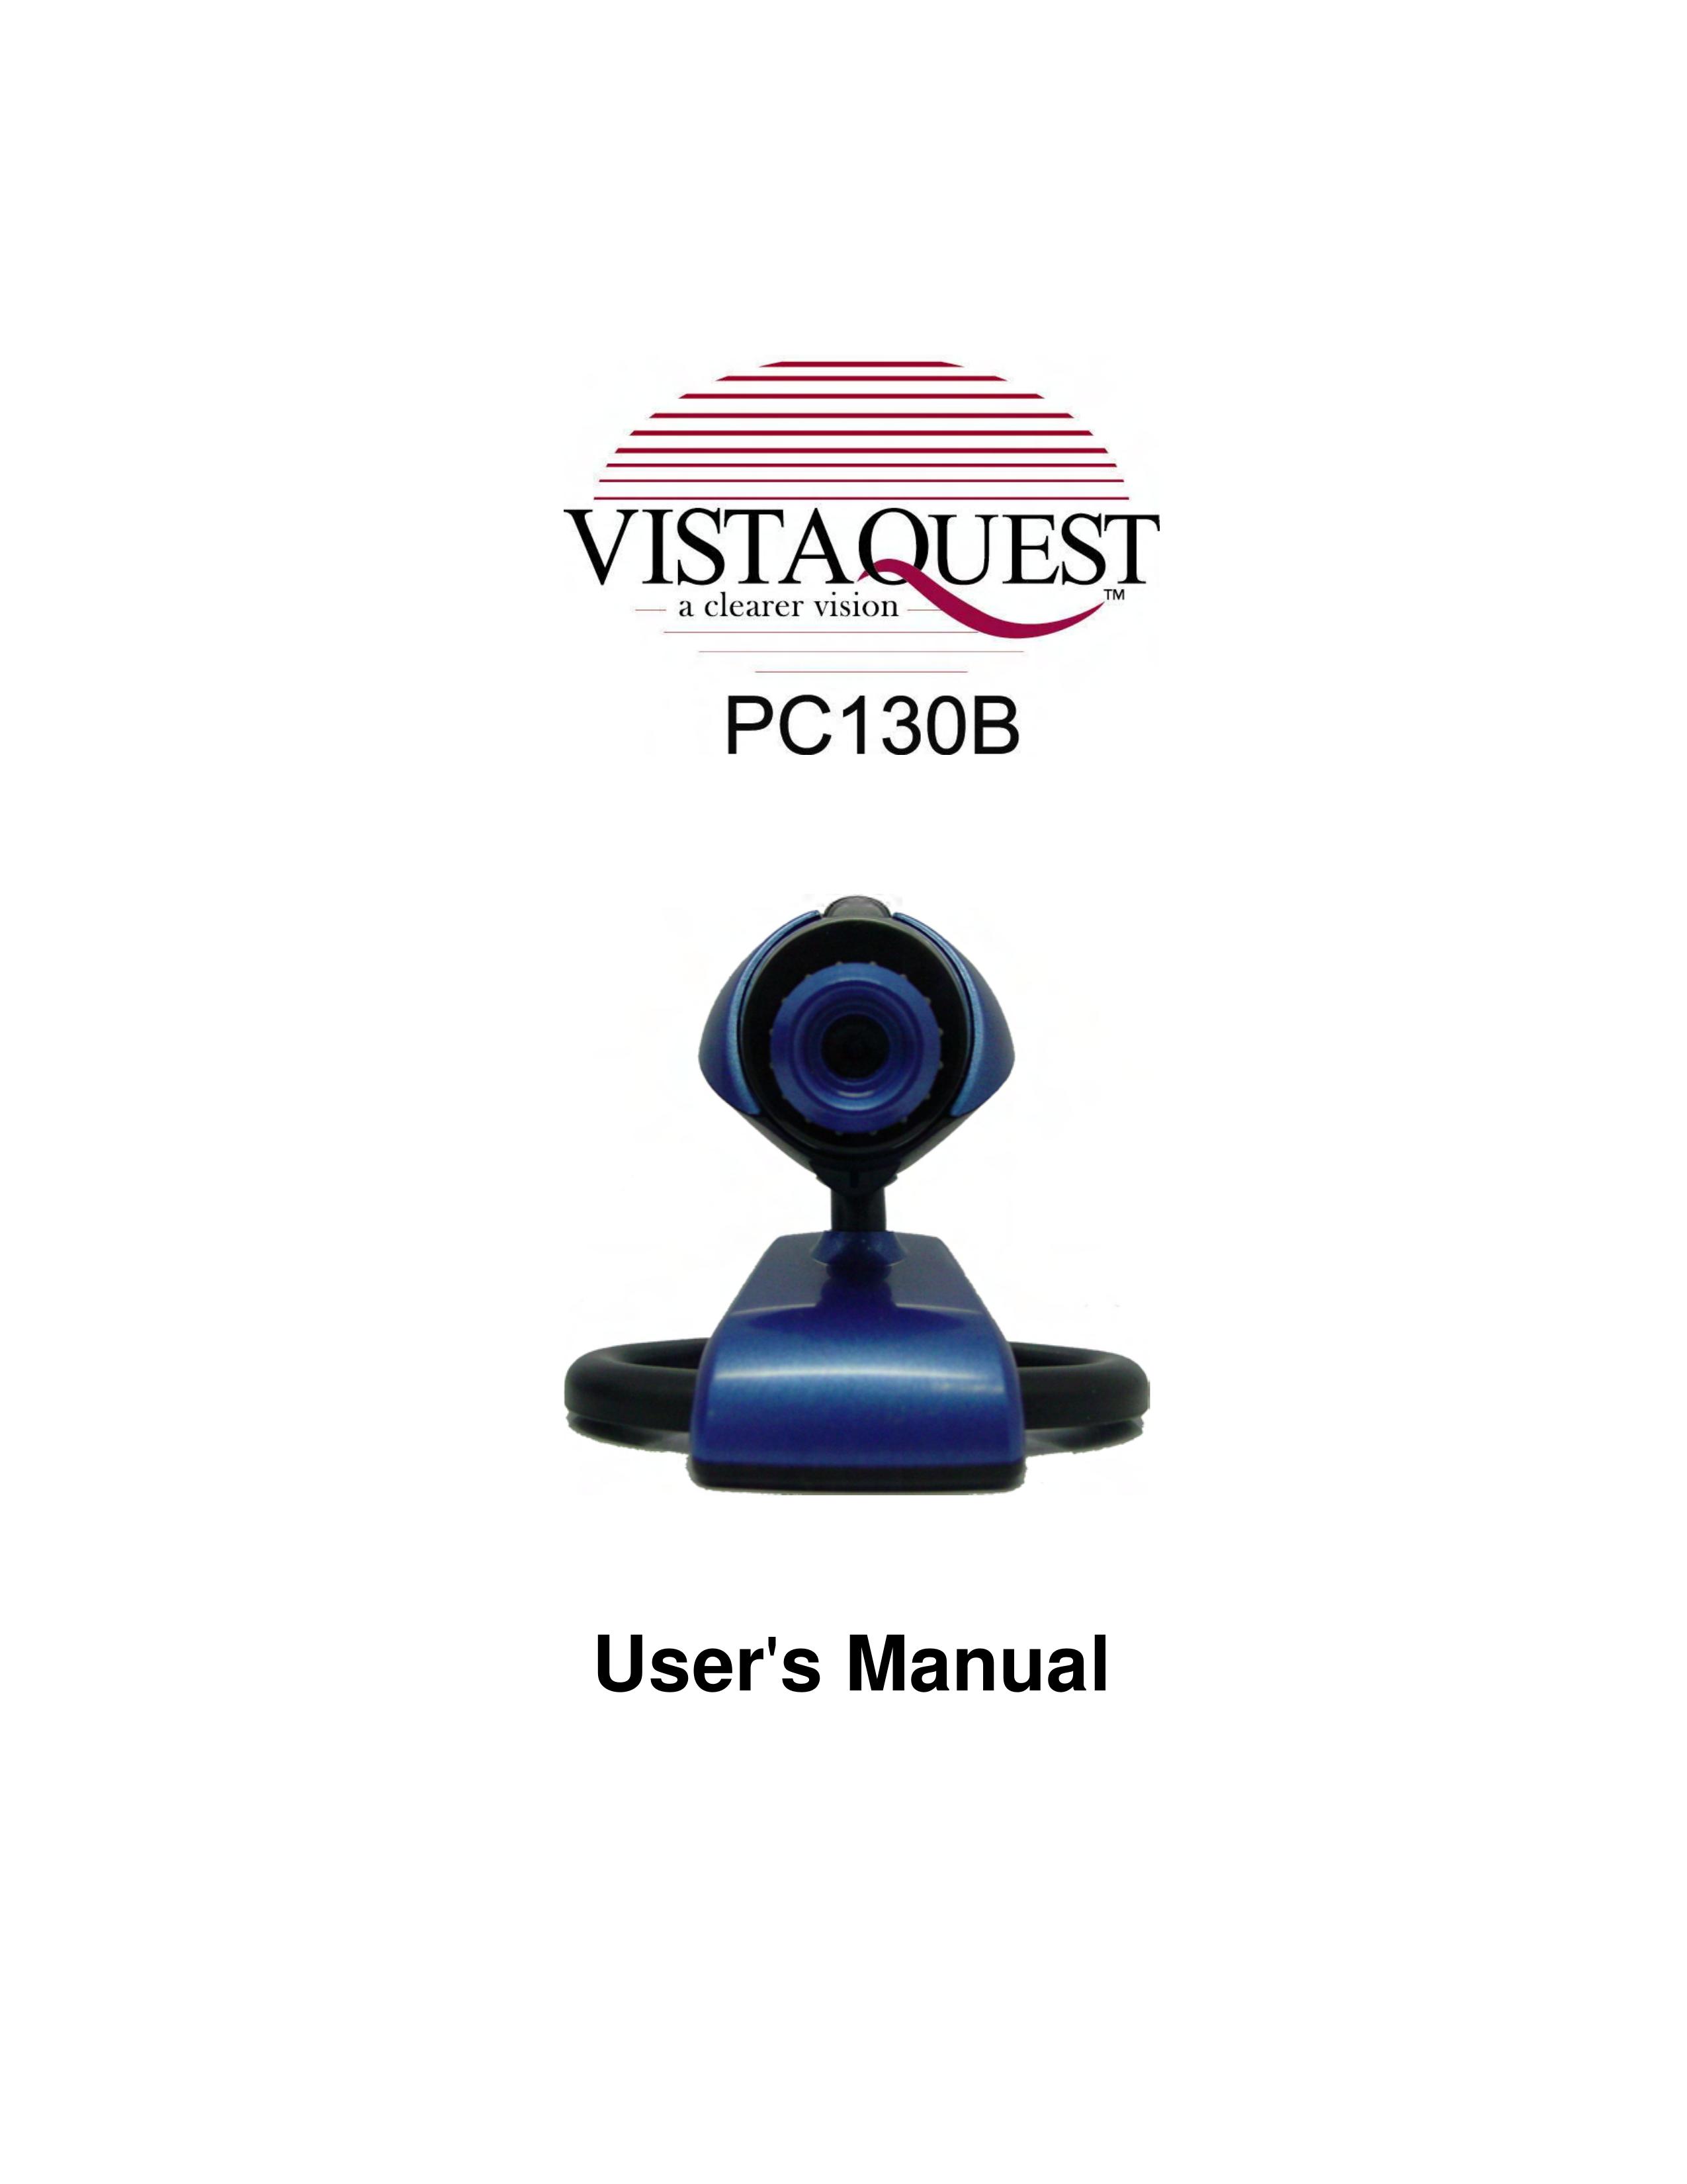 VistaQuest PC130B Digital Camera User Manual